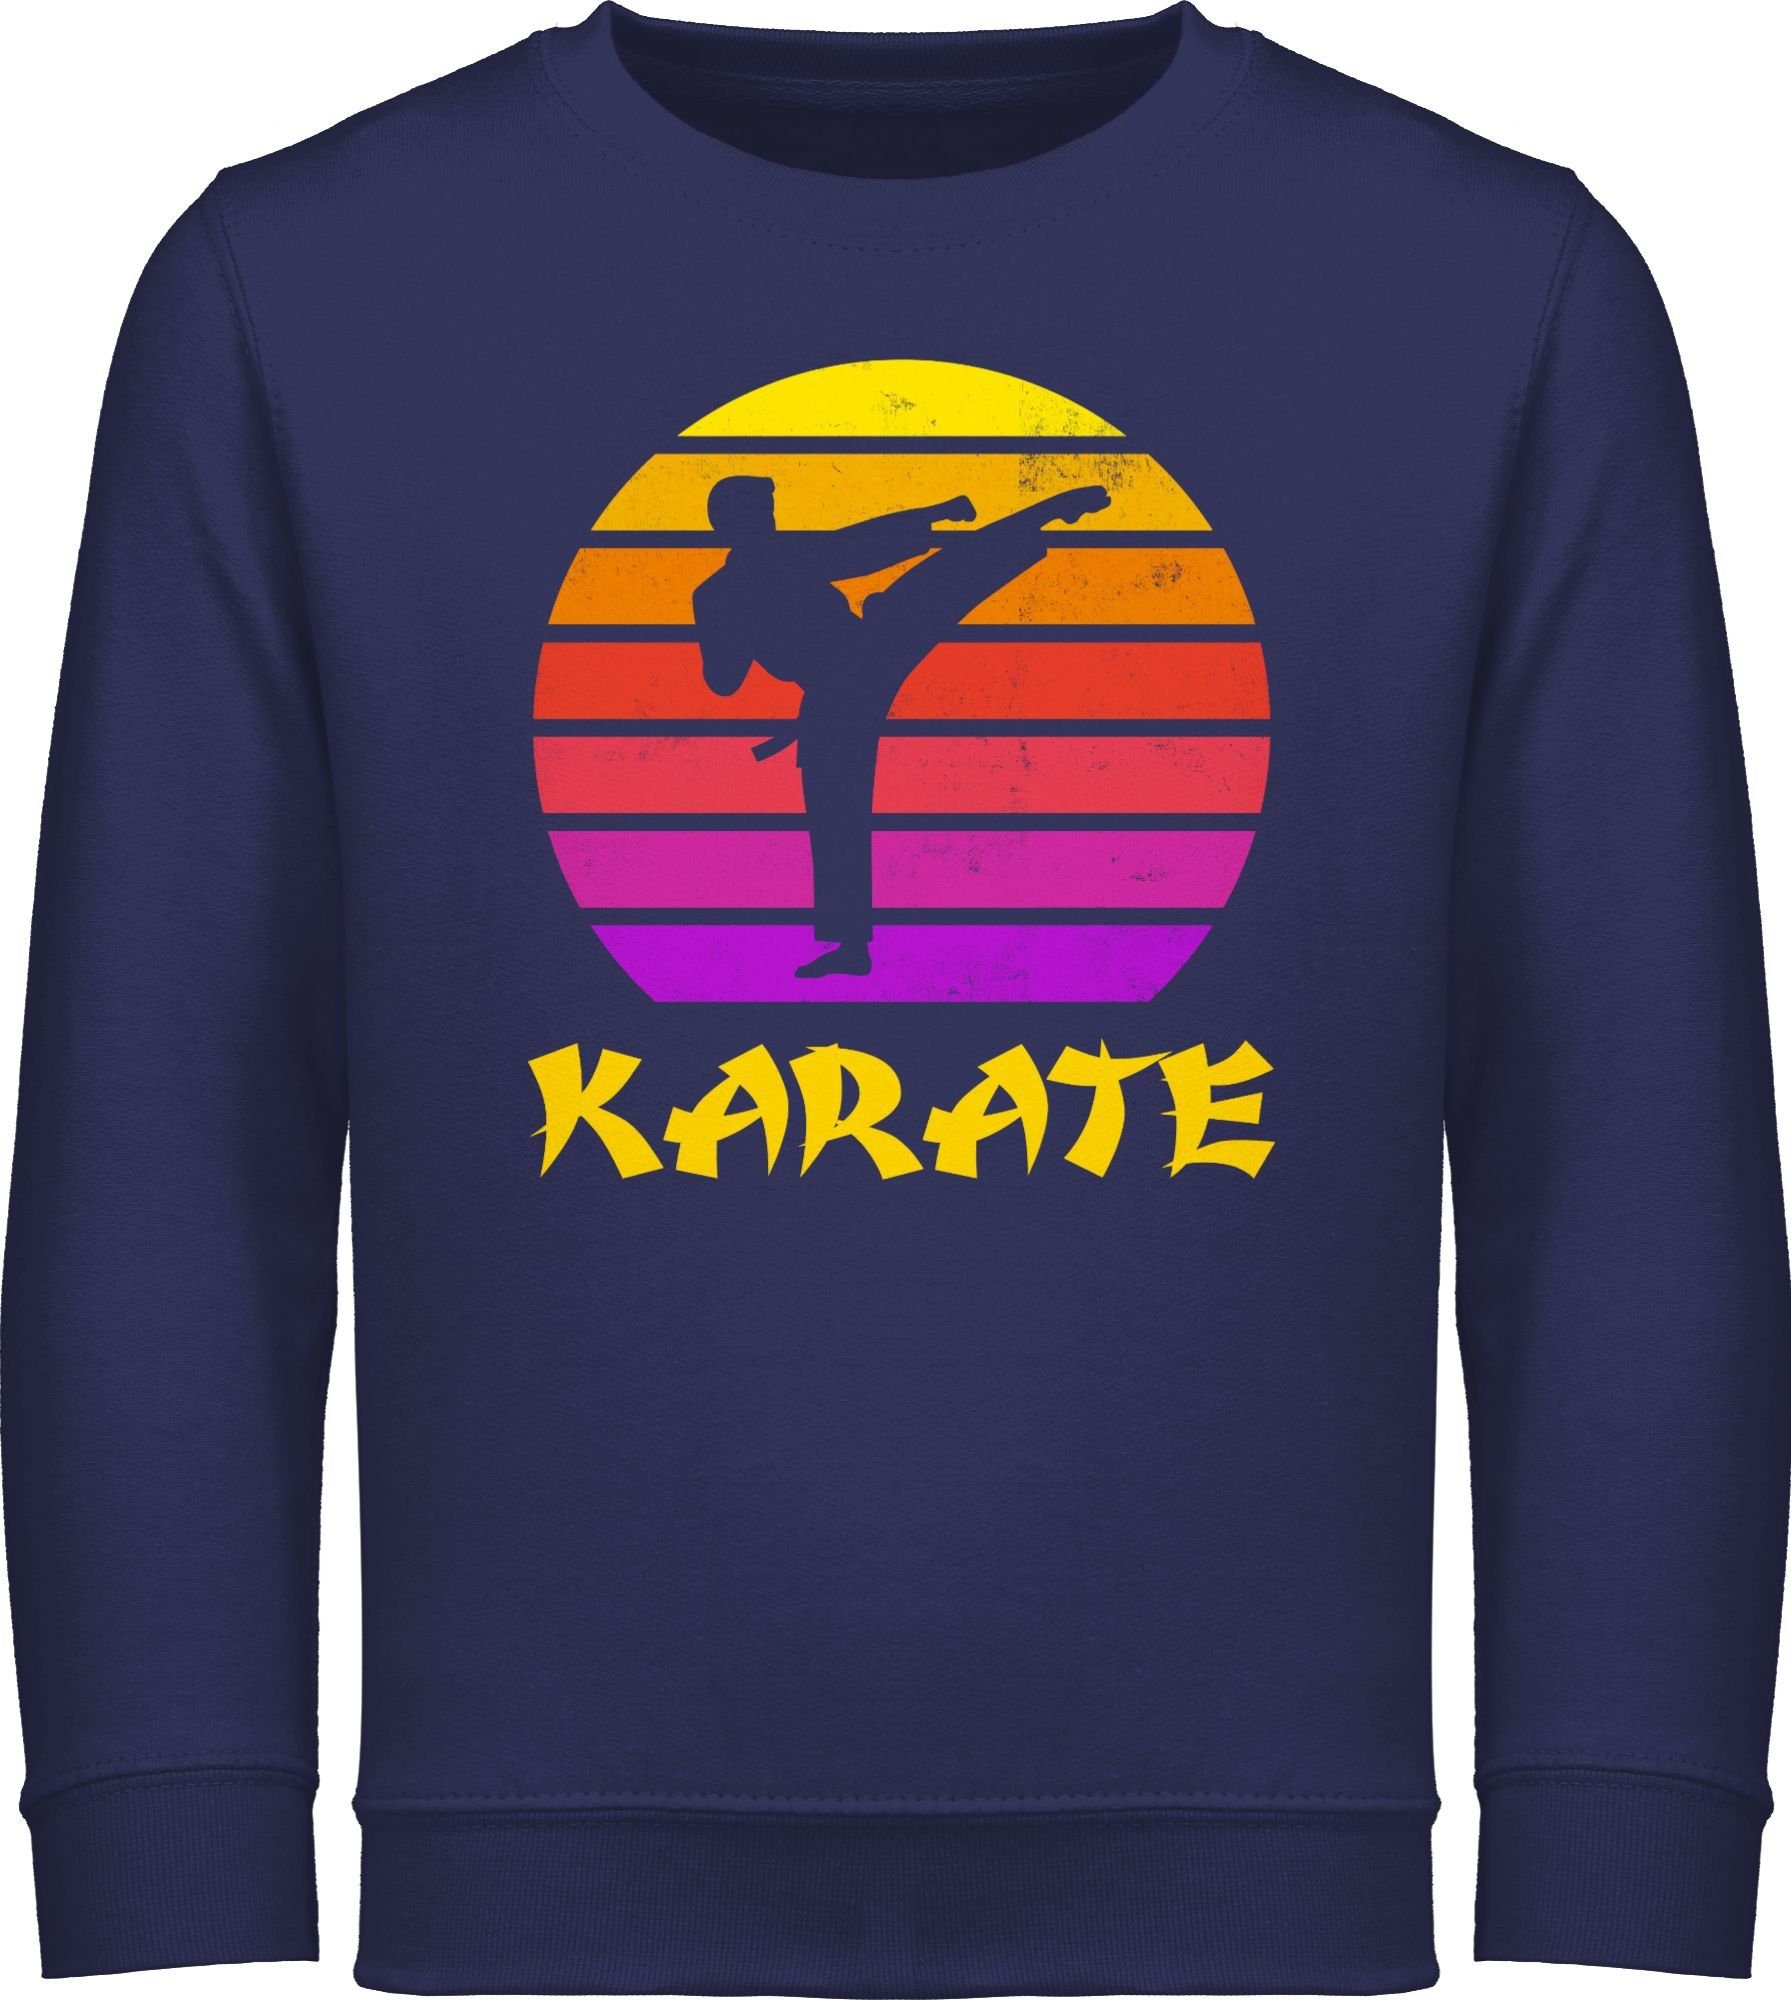 Shirtracer Sweatshirt Karate Retro Sonne Kinder Sport Kleidung 3 Navy Blau | Sweatshirts